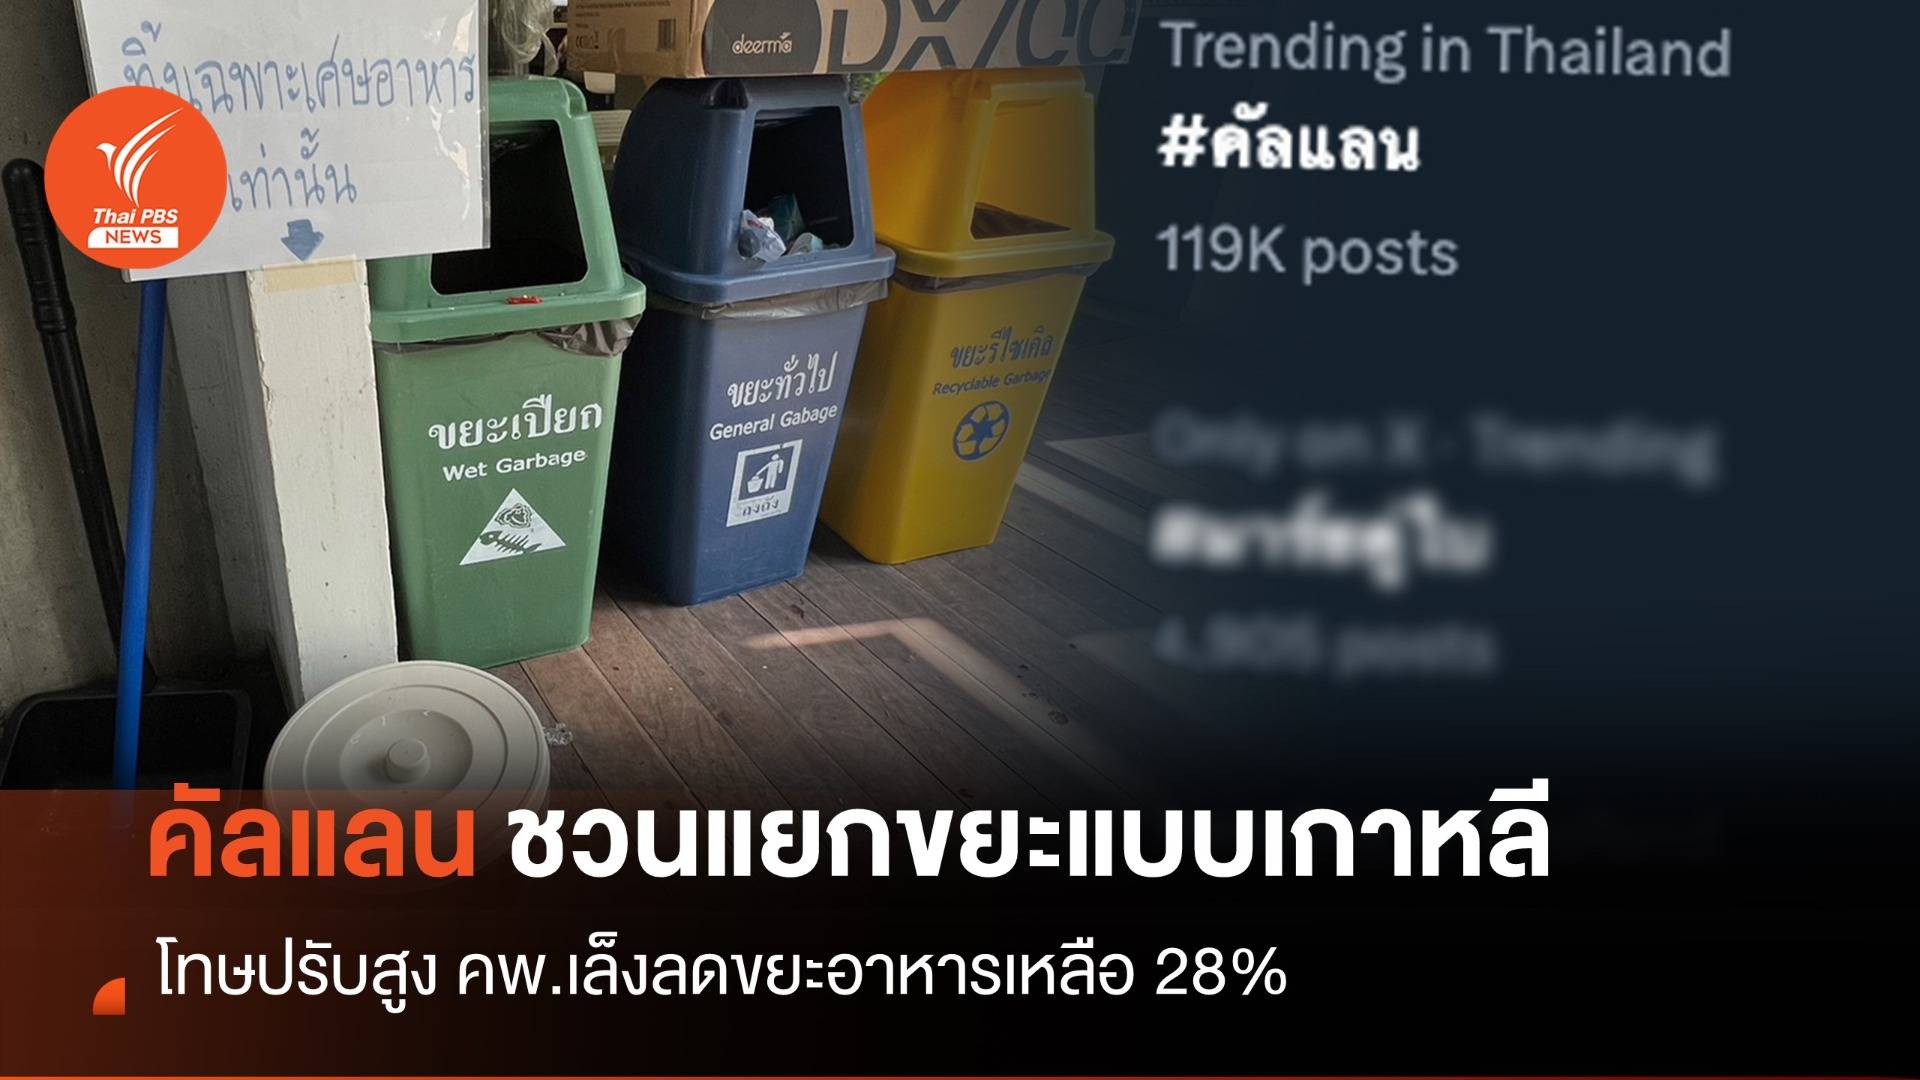 "คัลแลน" ชวนไทยแยกขยะแบบเกาหลี-คพ.เล็งลดขยะอาหาร 28%